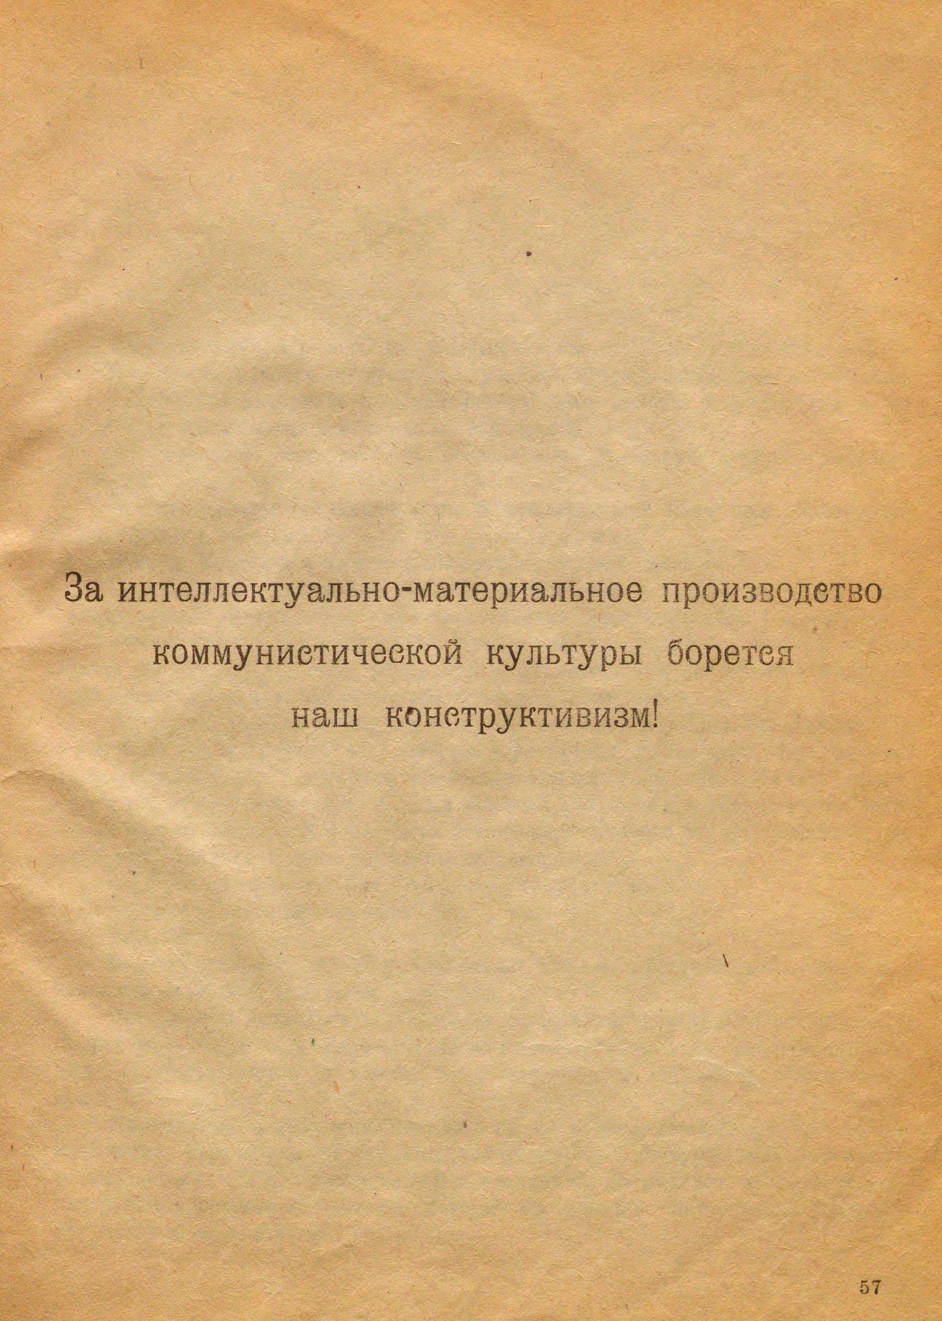 Конструктивизм / Алексей Ган. — Тверь : Тверское издательство, 1922